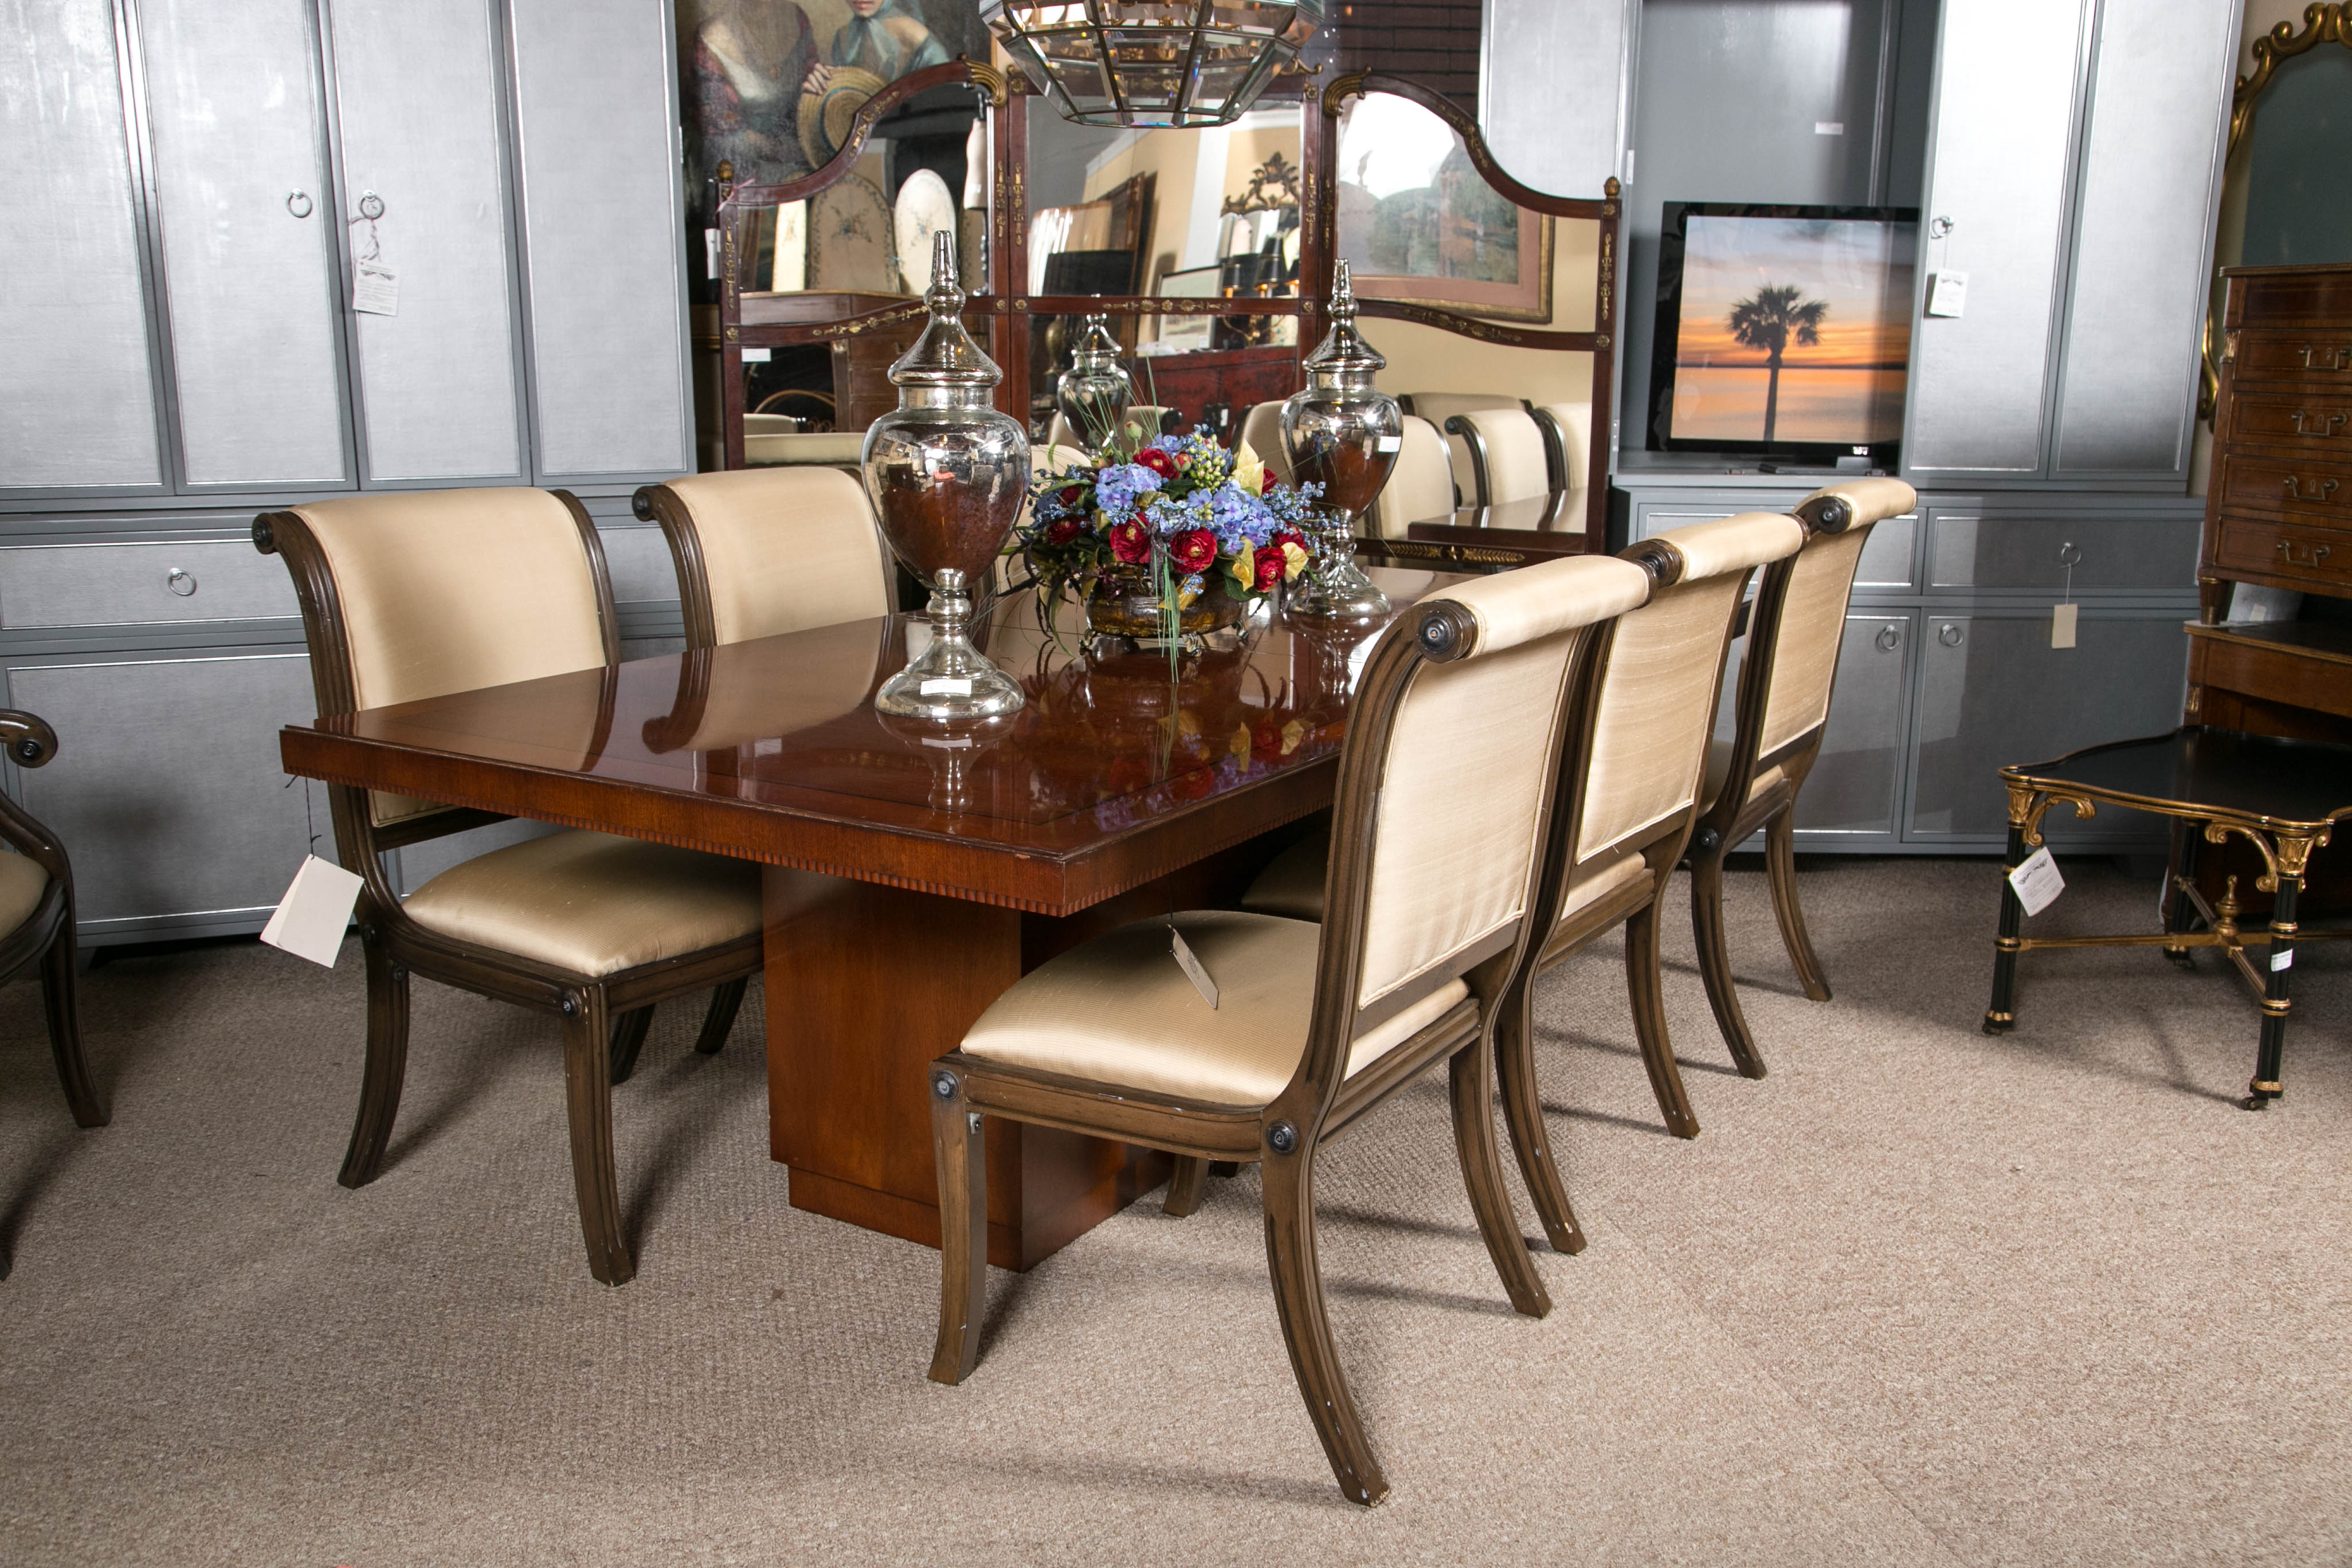 Cette table de salle à manger absolument magnifique est vendue à Bloomingdale's à plus de 18 000 dollars. Cette table de salle à manger en bois massif plaqué noyer est incrustée d'une bordure en ébène et repose sur une base sculptée. Livré avec une